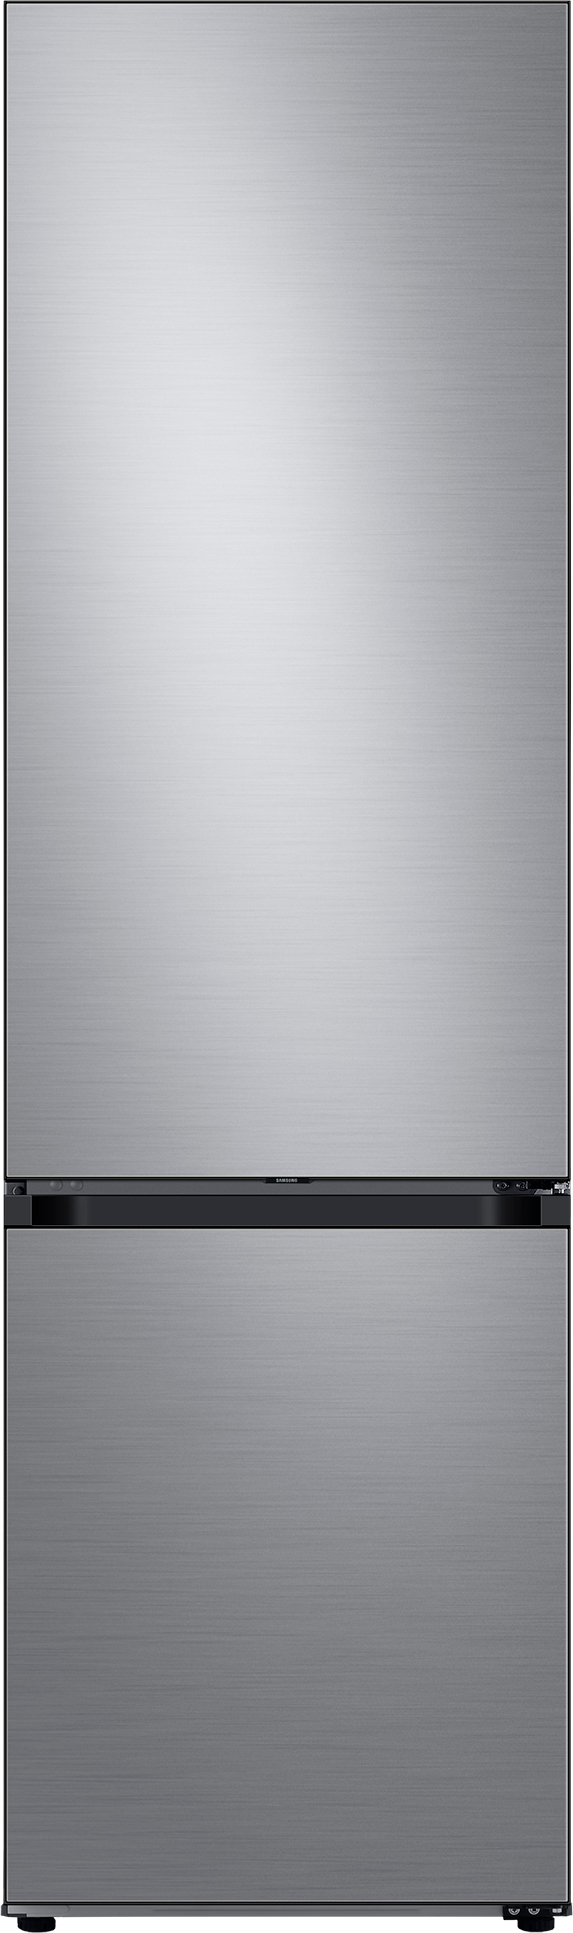 внешность товара Холодильник Samsung RB38A6B62AP/UA - 26